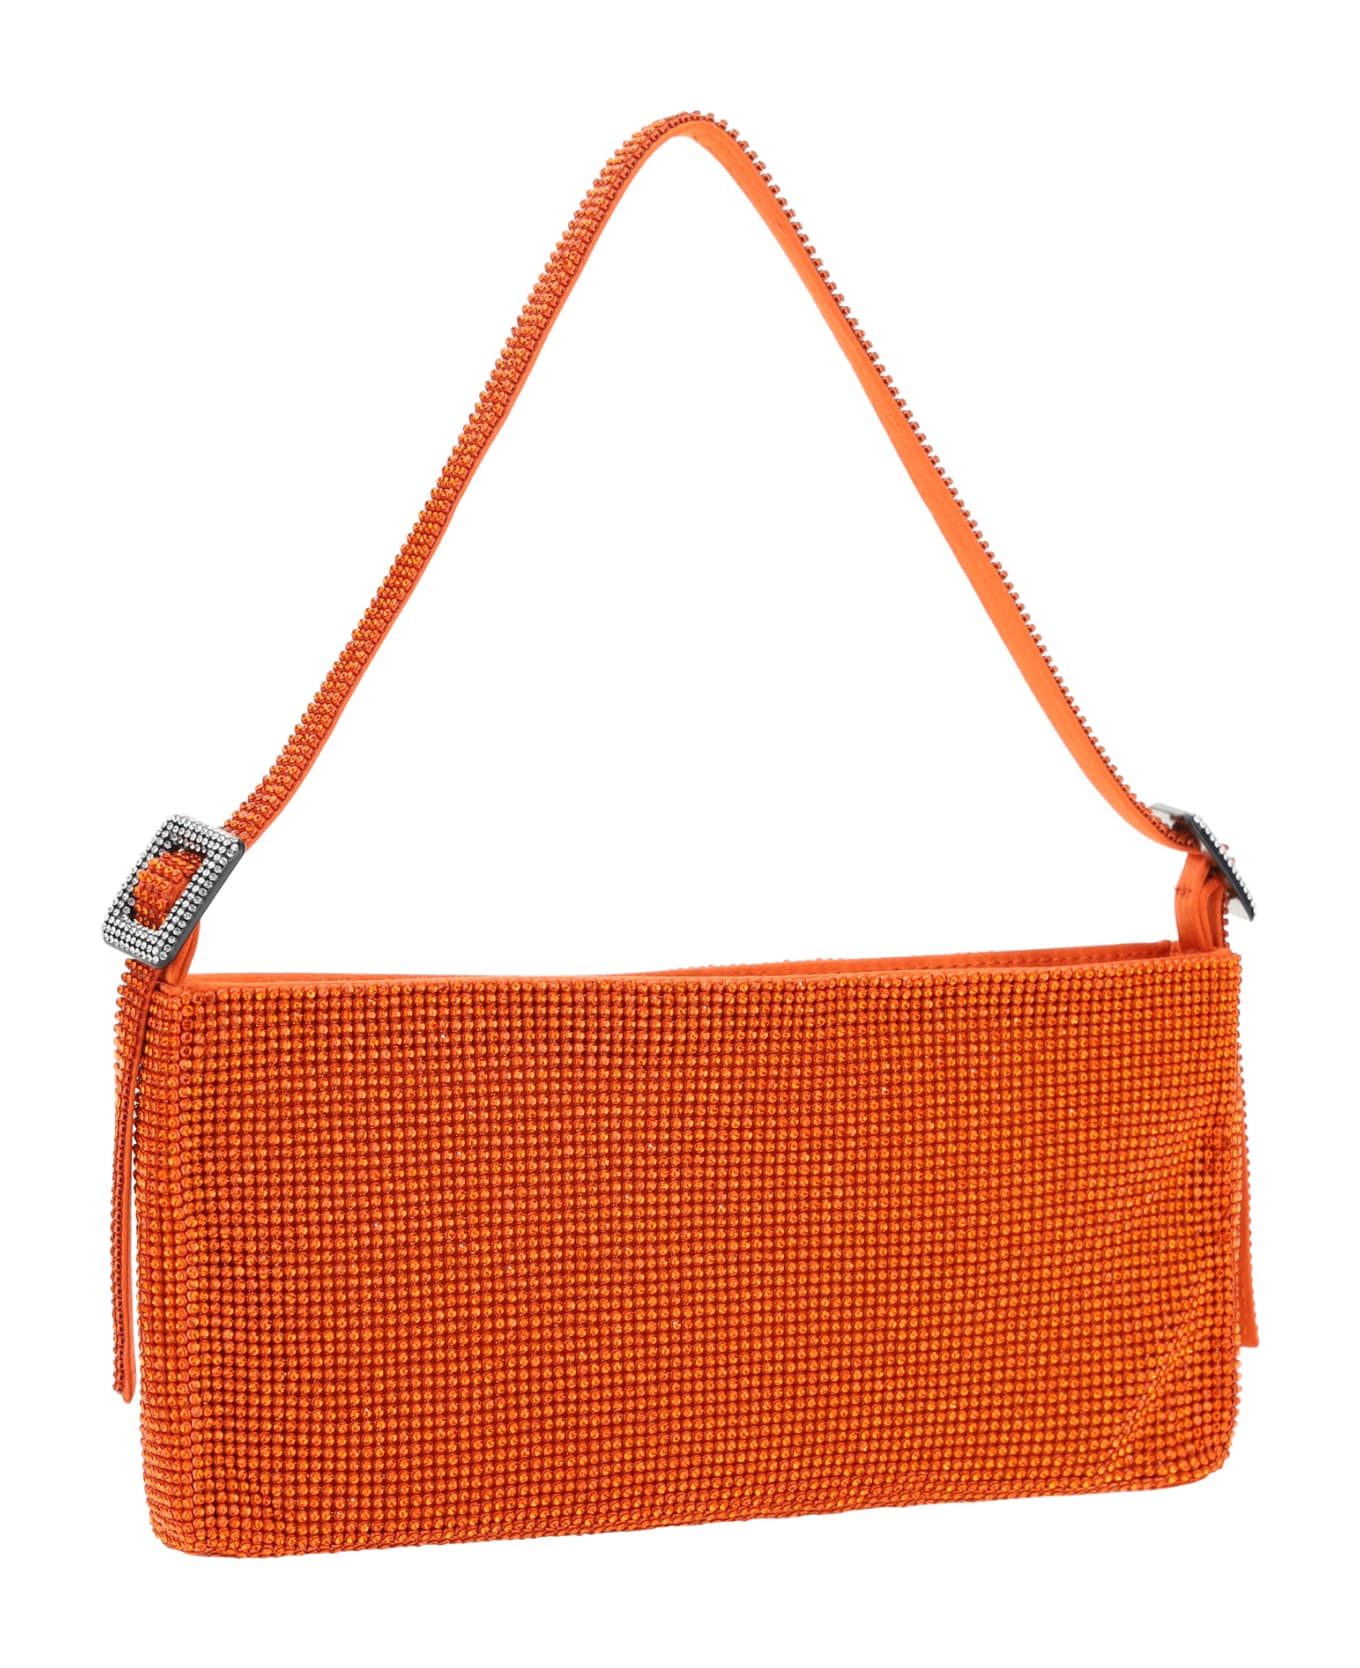 Benedetta Bruzziches Handbag - Orange